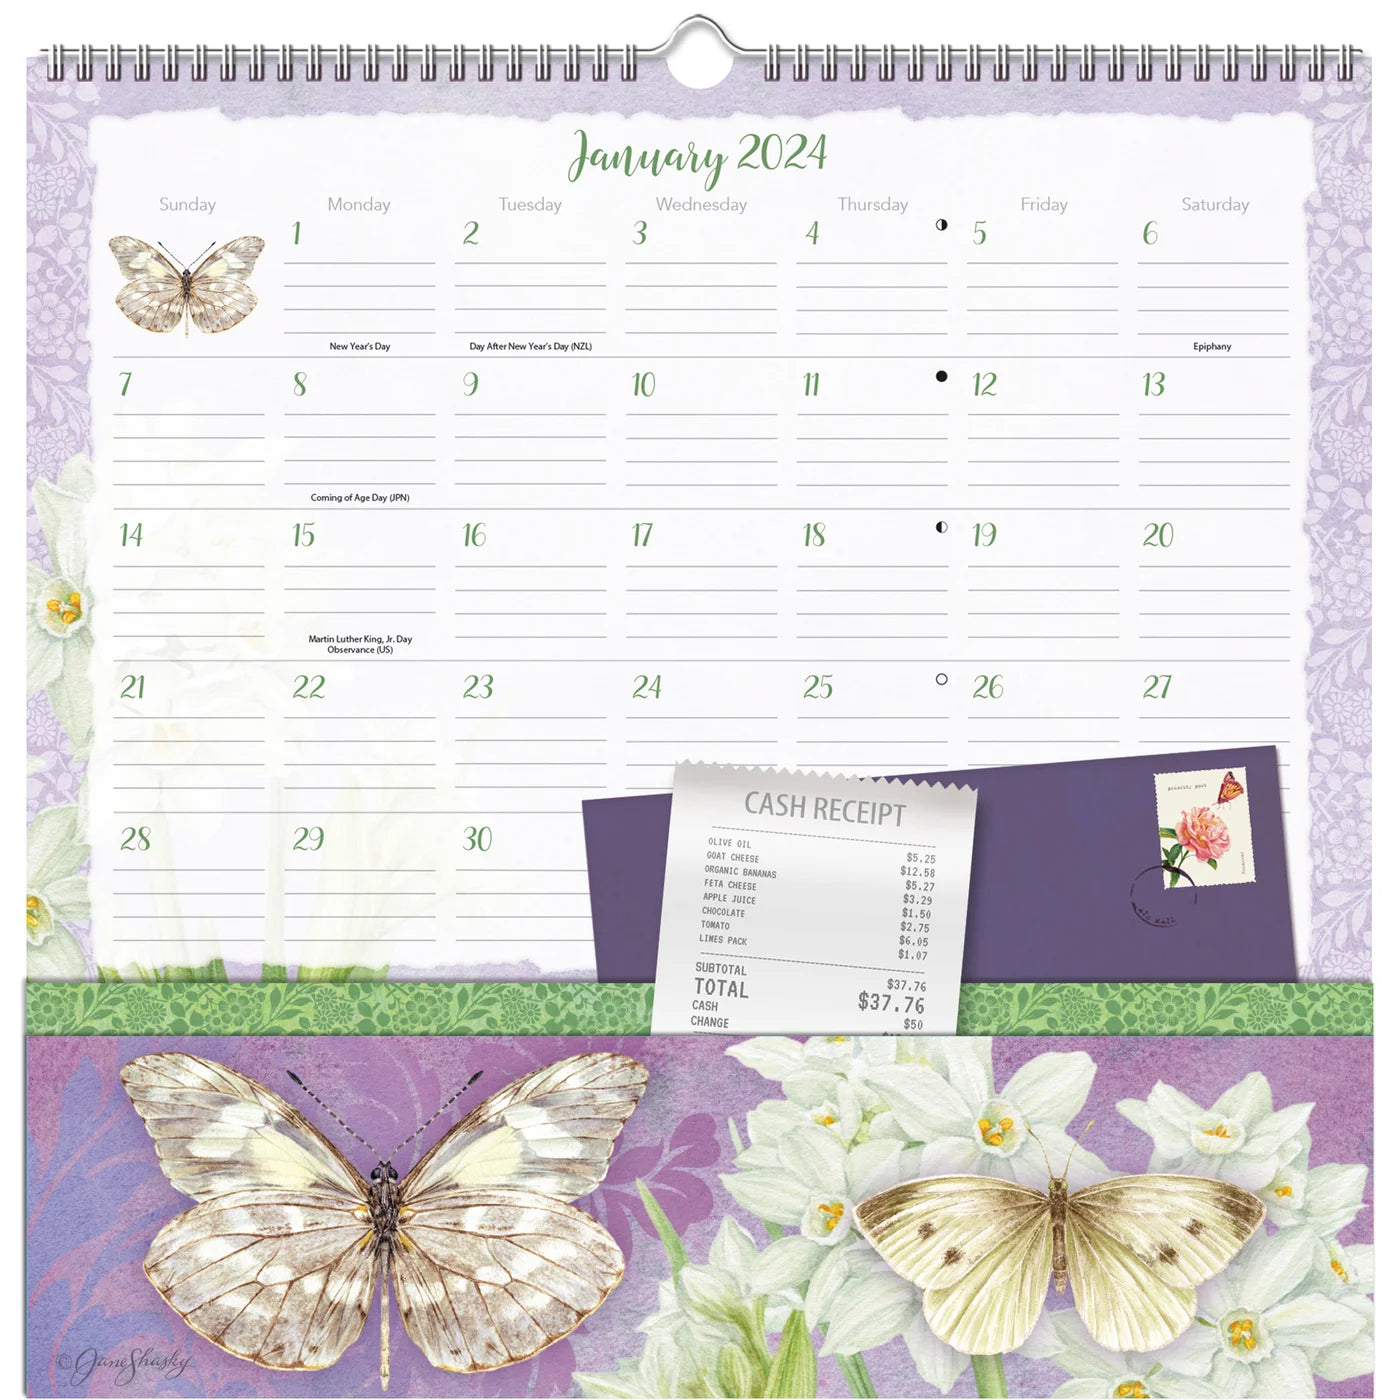 2024 Butterflies - Note Nook Square Wall Calendar